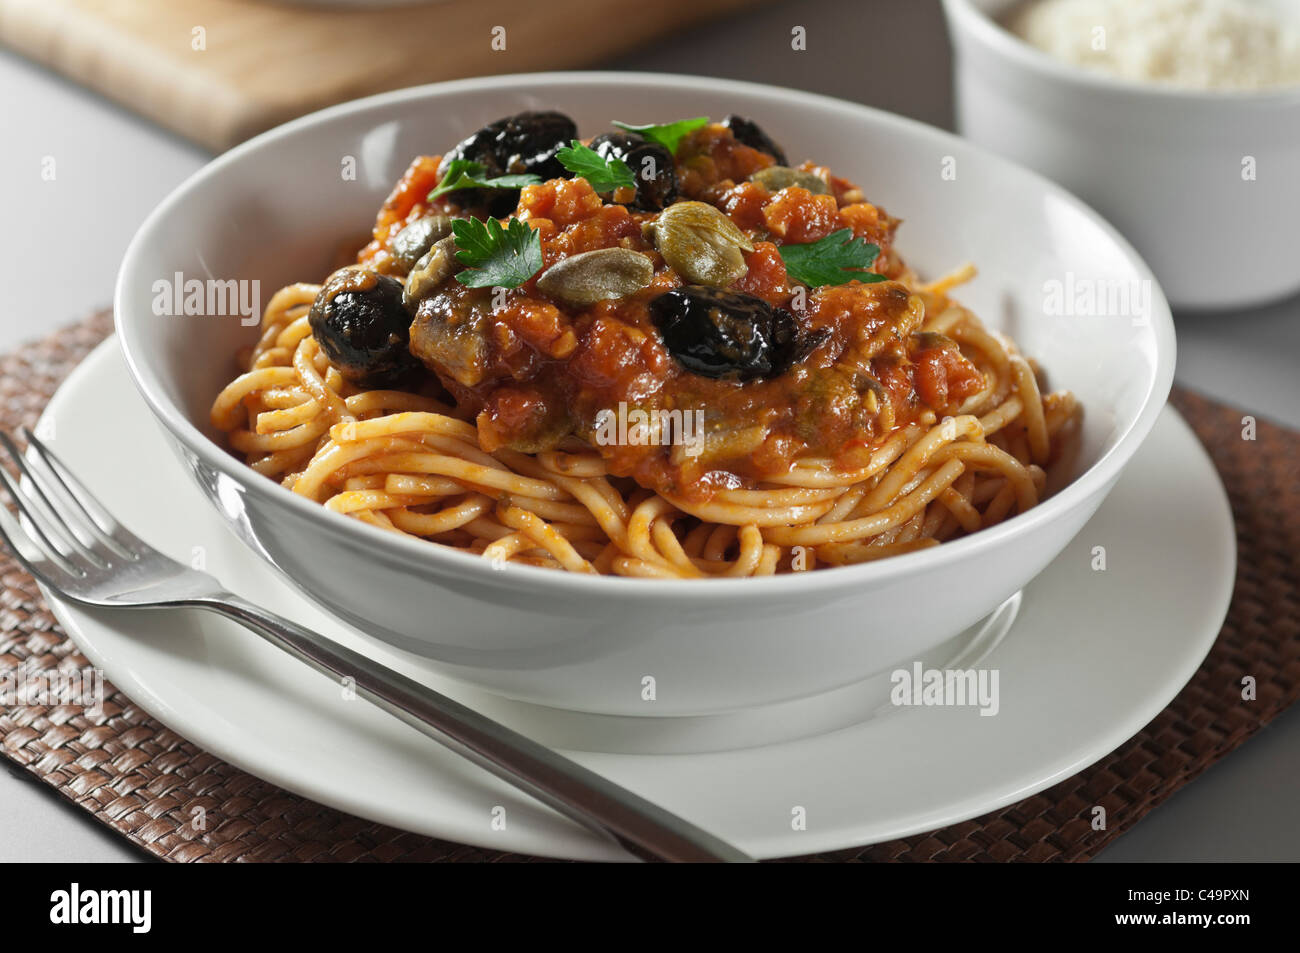 Spaghetti alla puttanesca Italian food Stock Photo